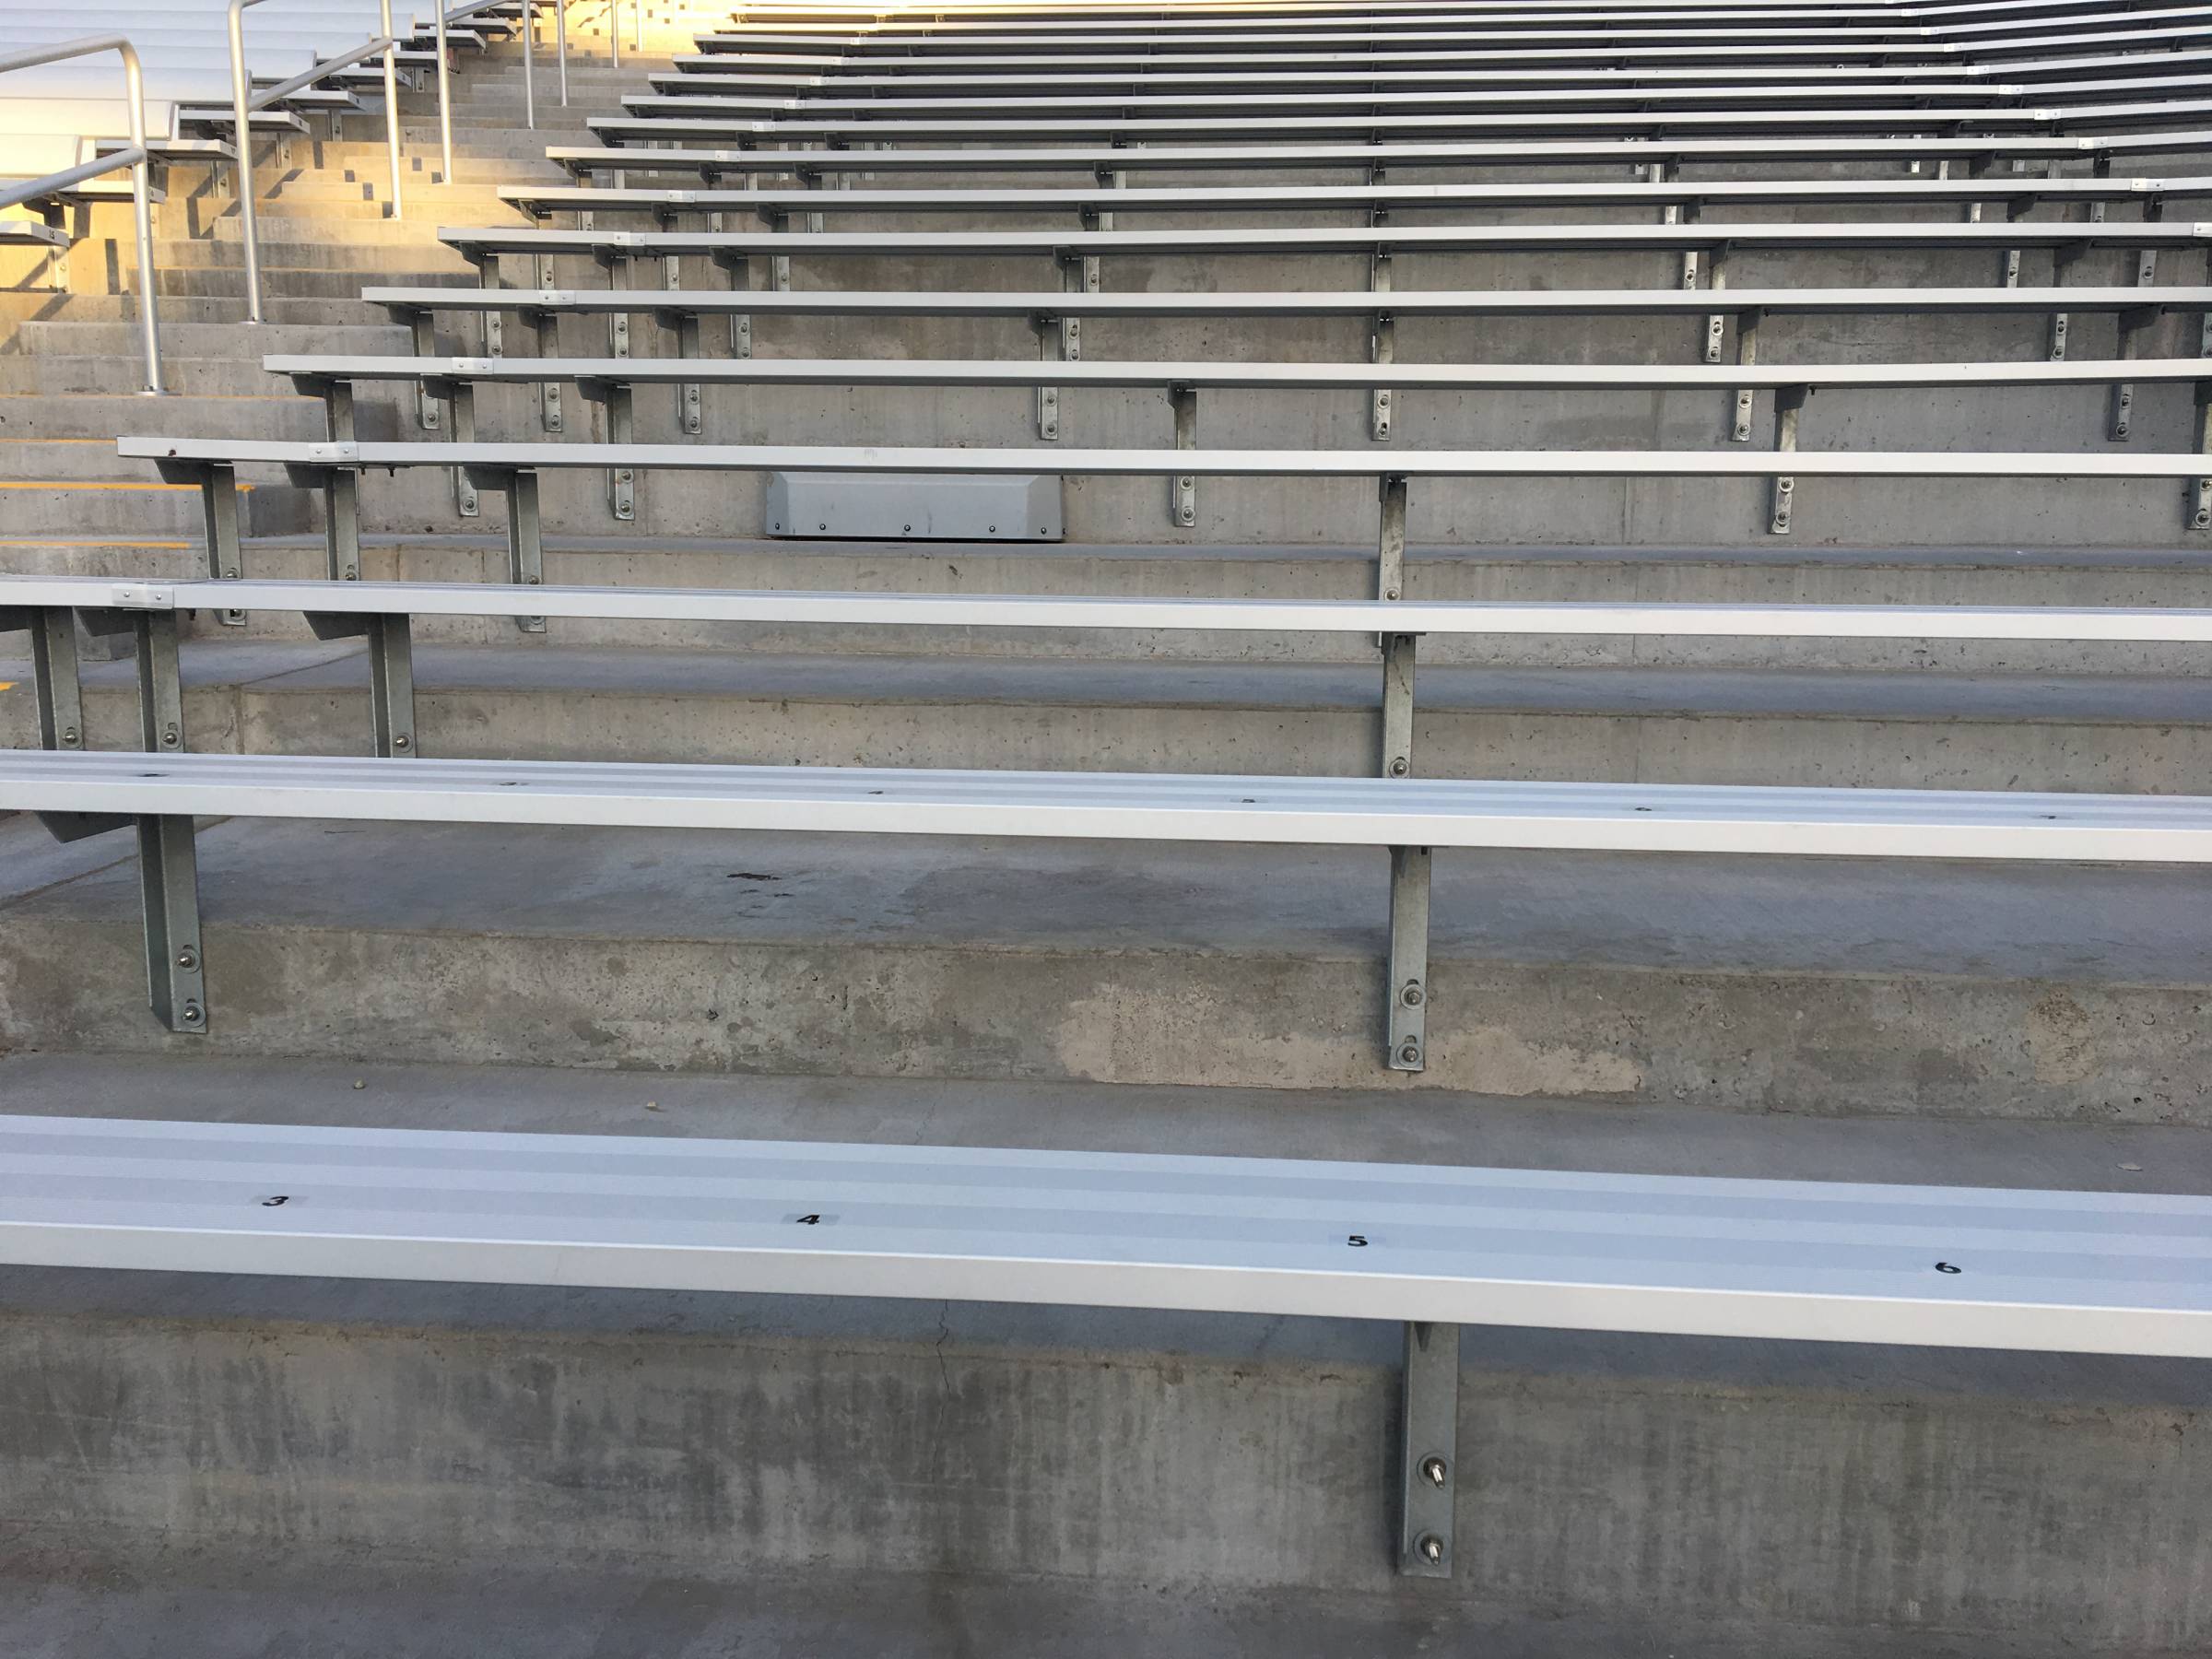 Bleacher Style Seats at Sun Devil Stadium